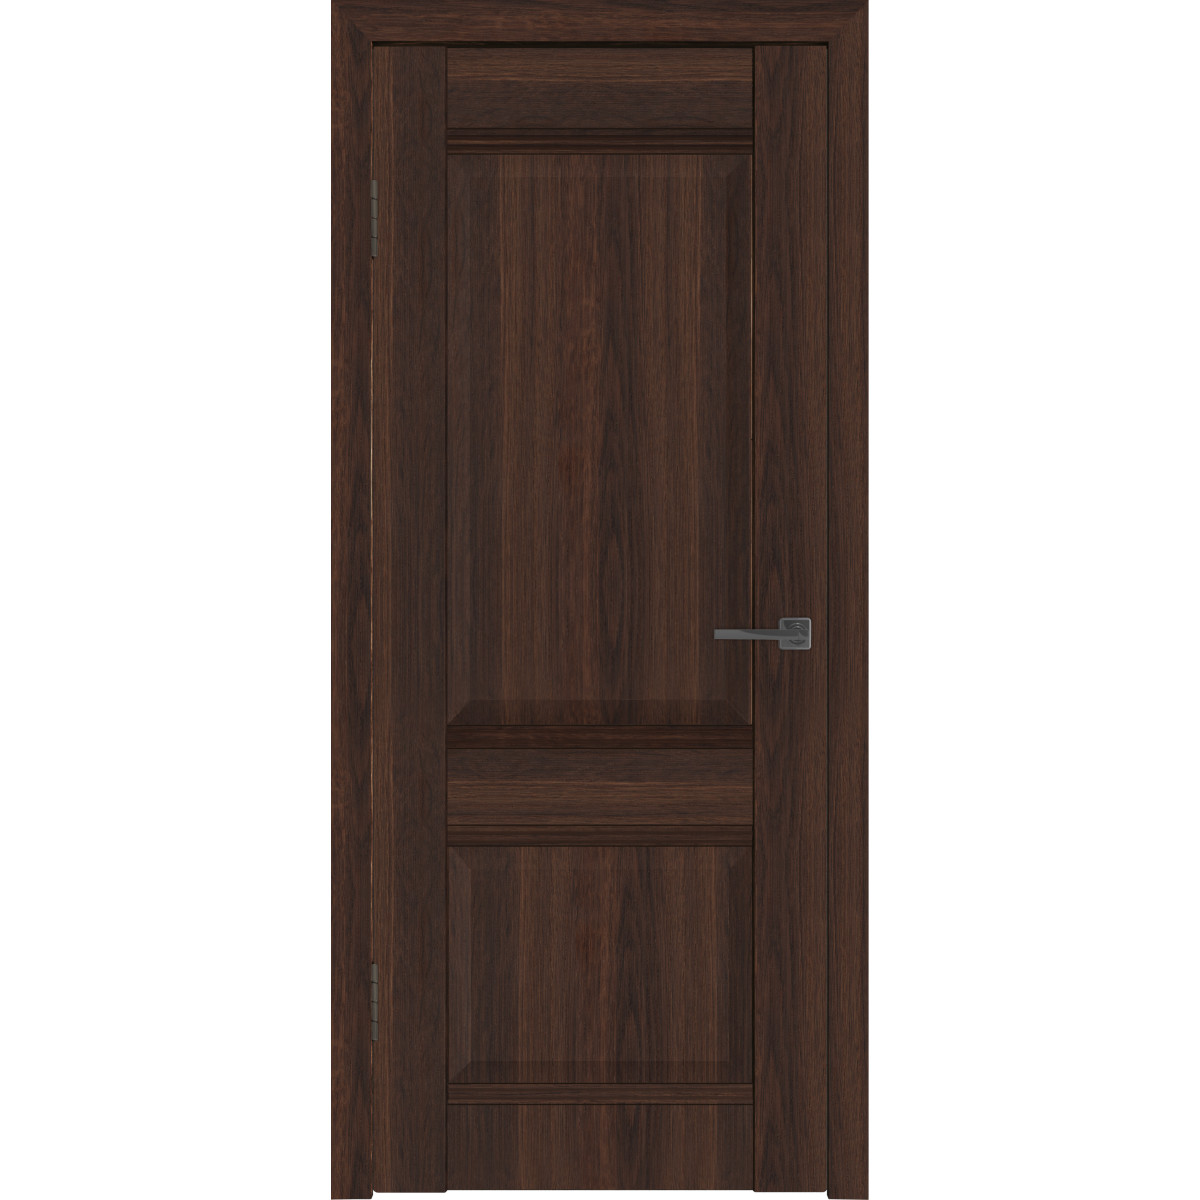 Дверь межкомнатная глухая с замком и петлями в комплекте Классик 2 80x200 см ПВХ цвет каштан